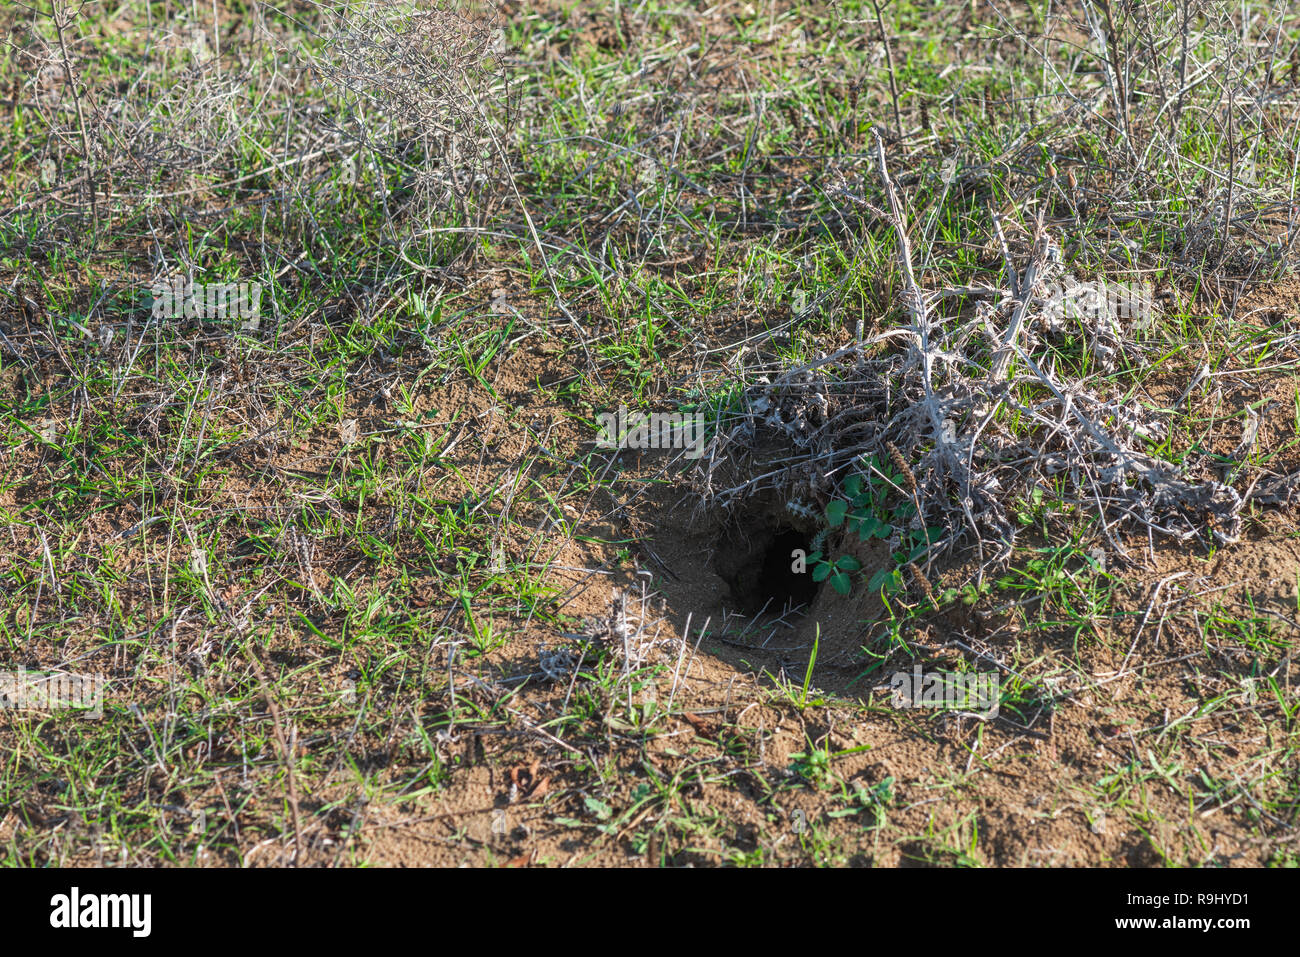 Tiefes Loch von einem wilden Tier in den Boden Stockfoto